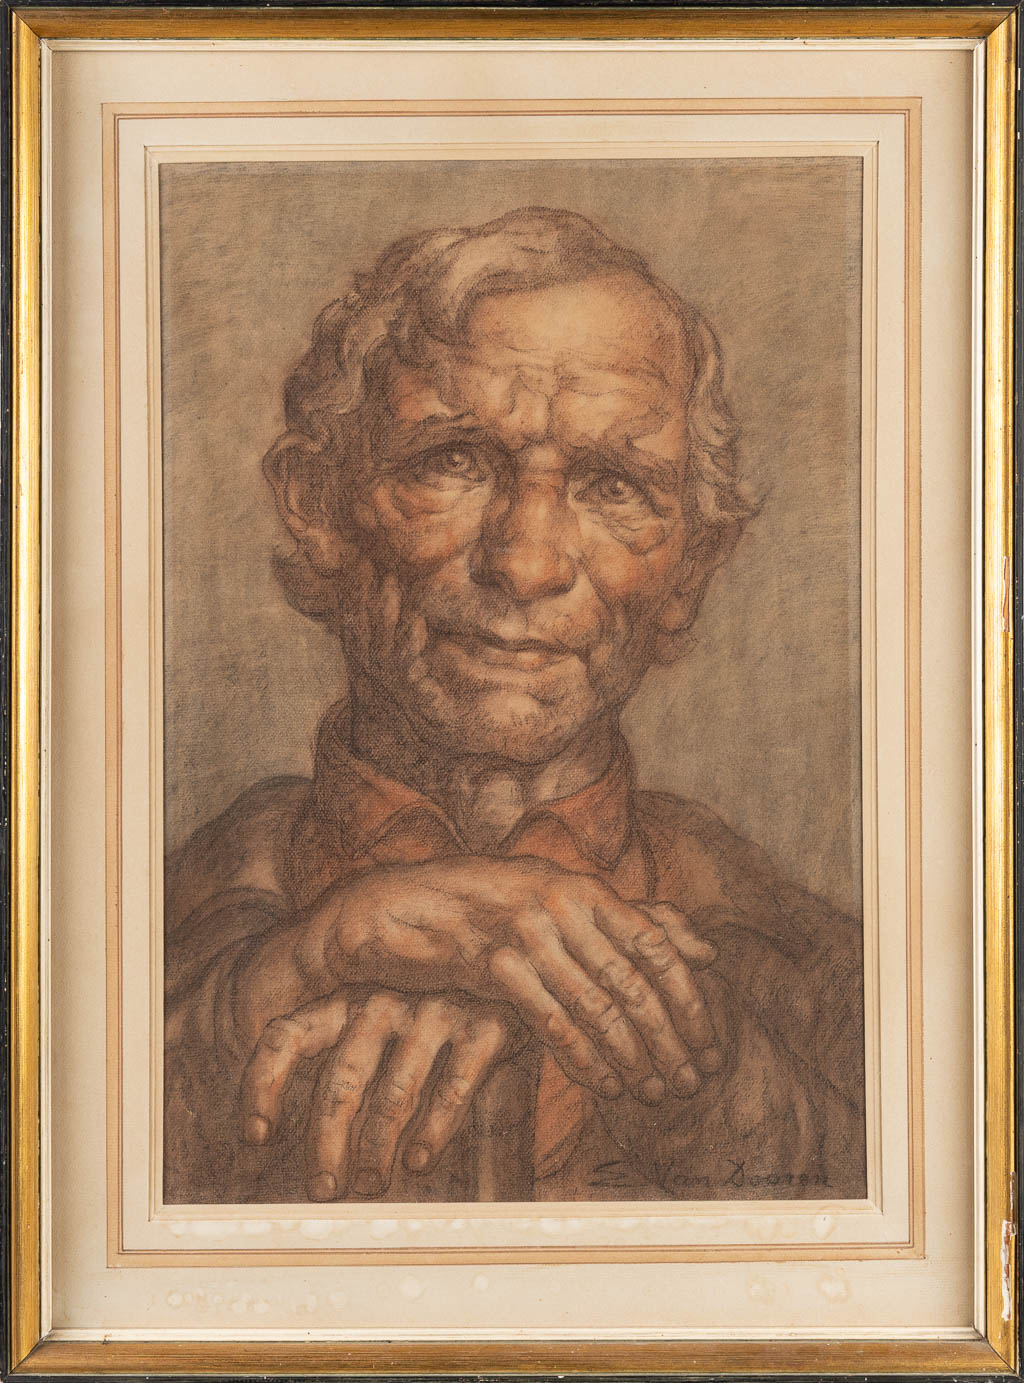 Edmond VAN DOOREN (1896-1965) 'Portrait of a man' gouache on paper. (40 x 60 cm)